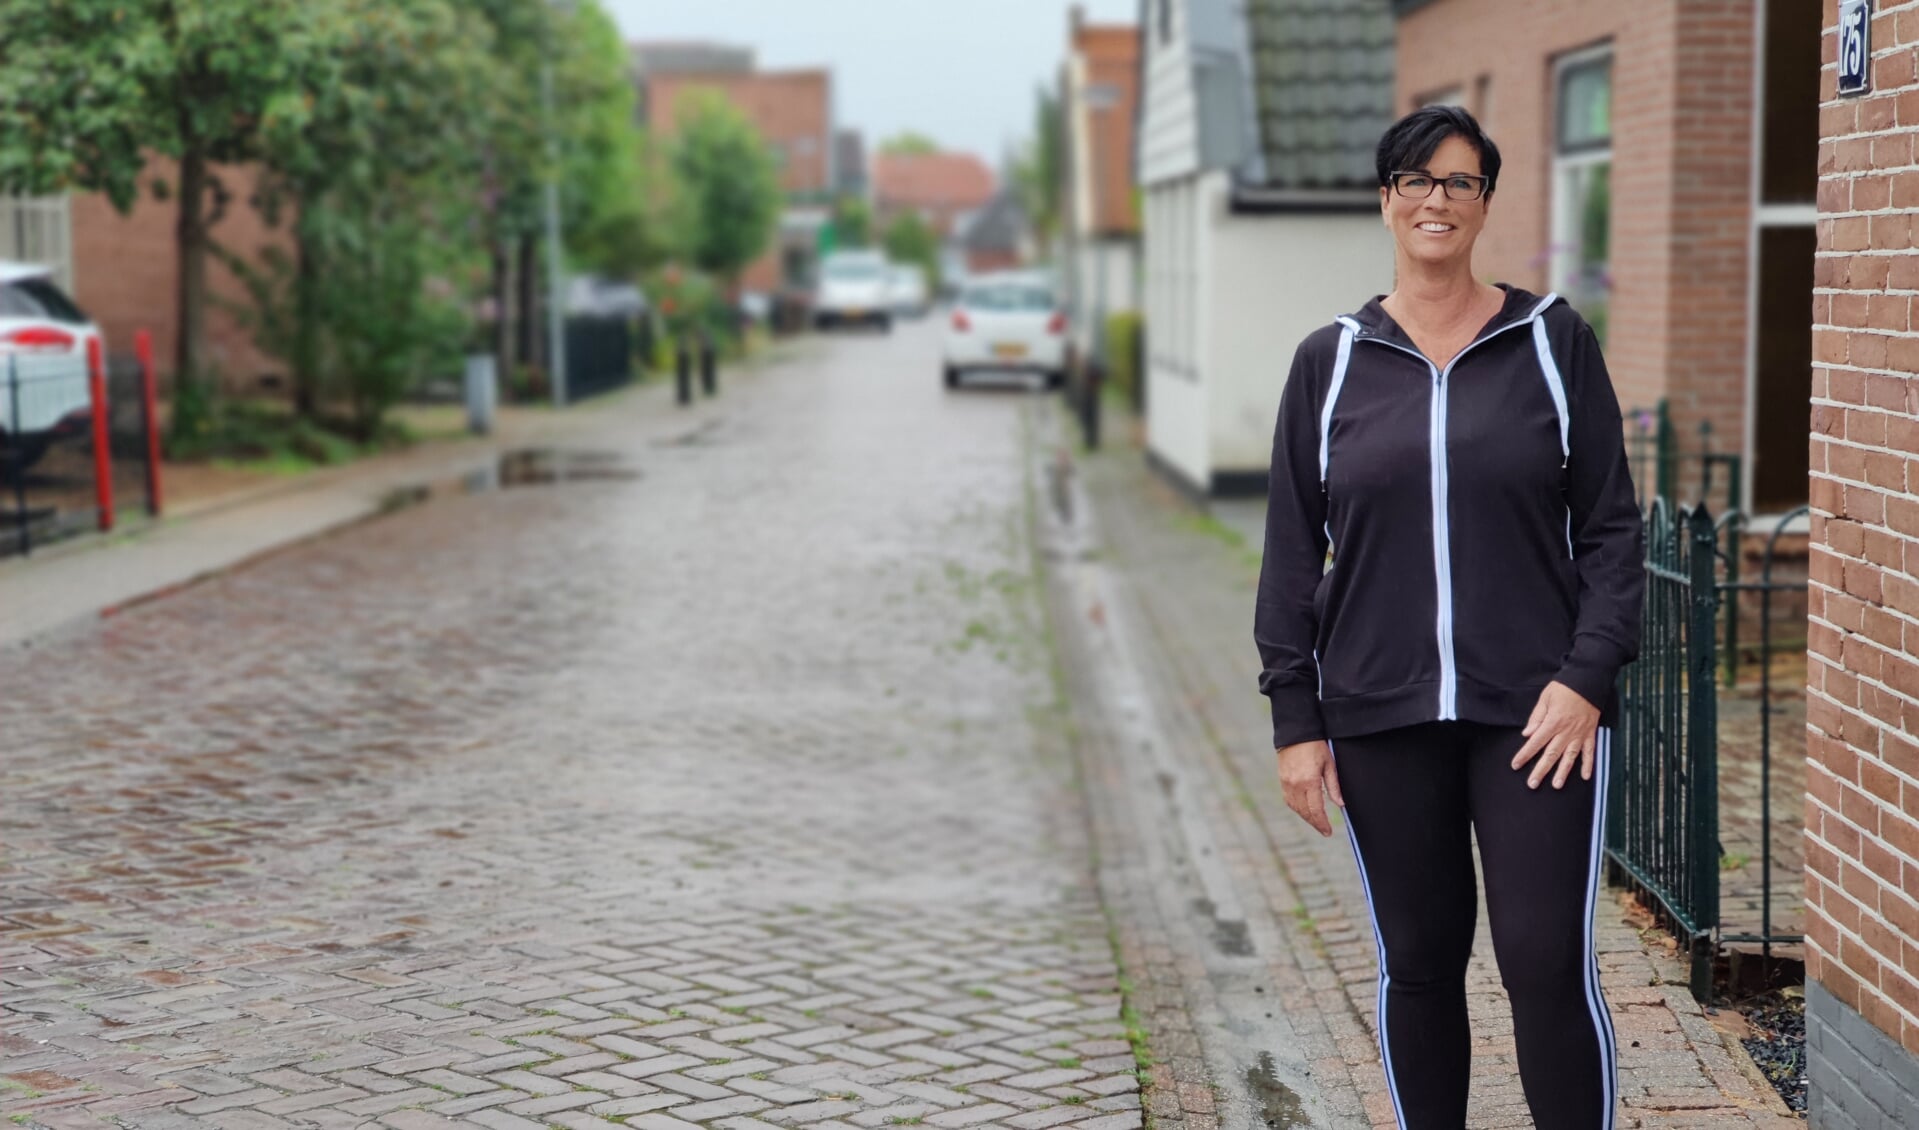 Karin Wunderink loopt tijdens haar wandeltraining graag door de dorpsstraat, waar ze zo verliefd op is.